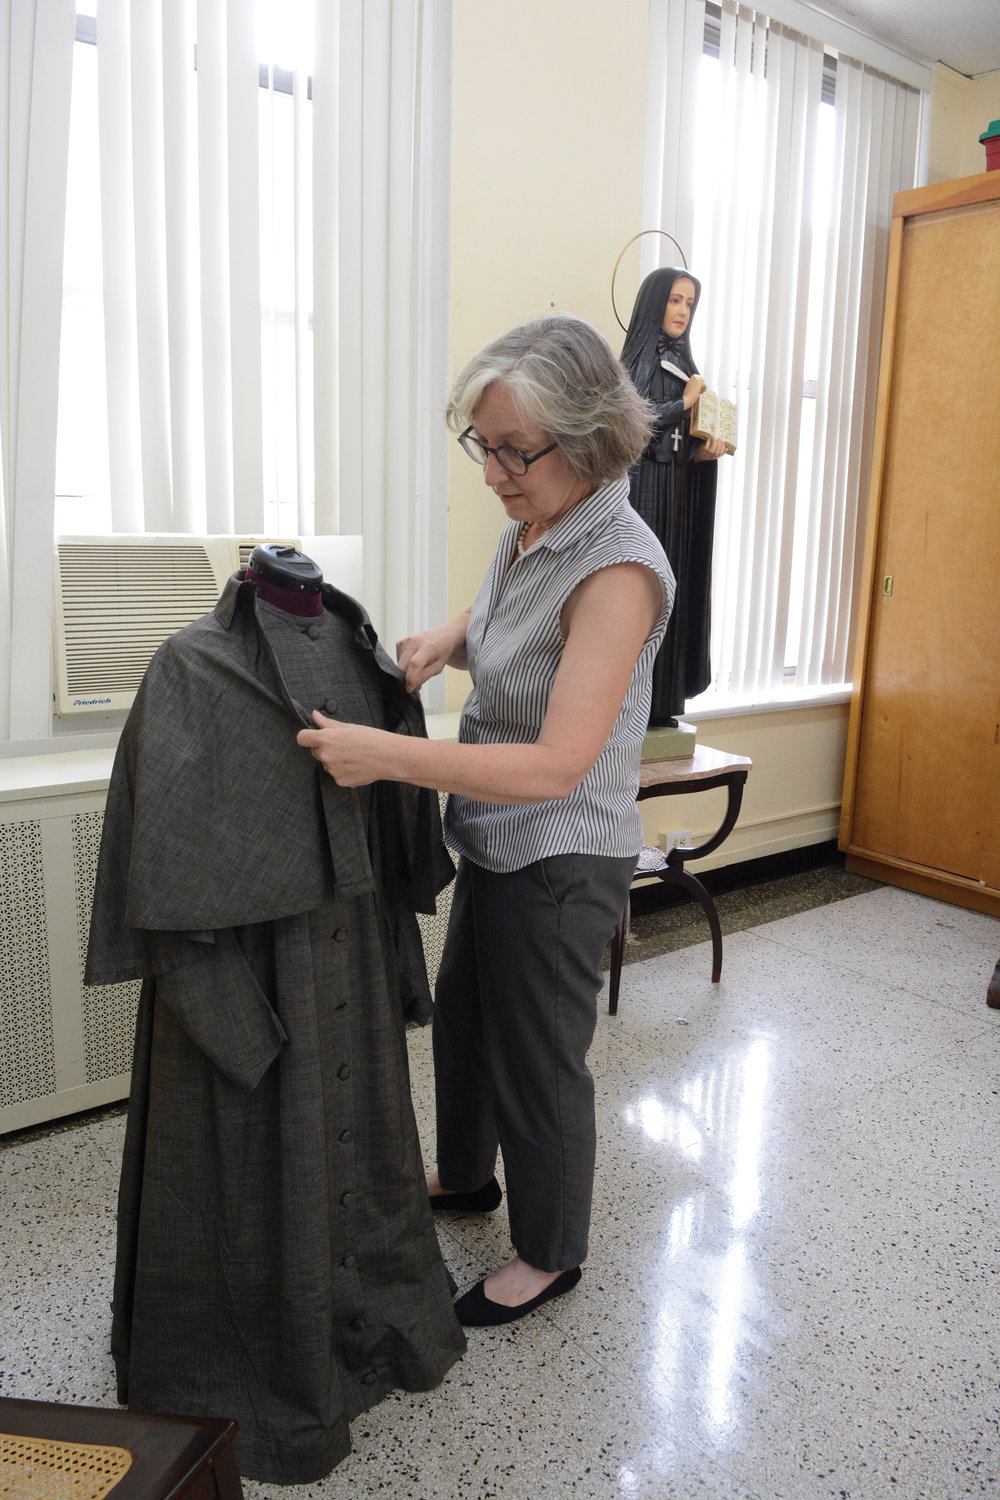 Julia Attaway, directora ejecutiva del santuario, ajusta atuendo de época de Madre Cabrini el 8 de julio.